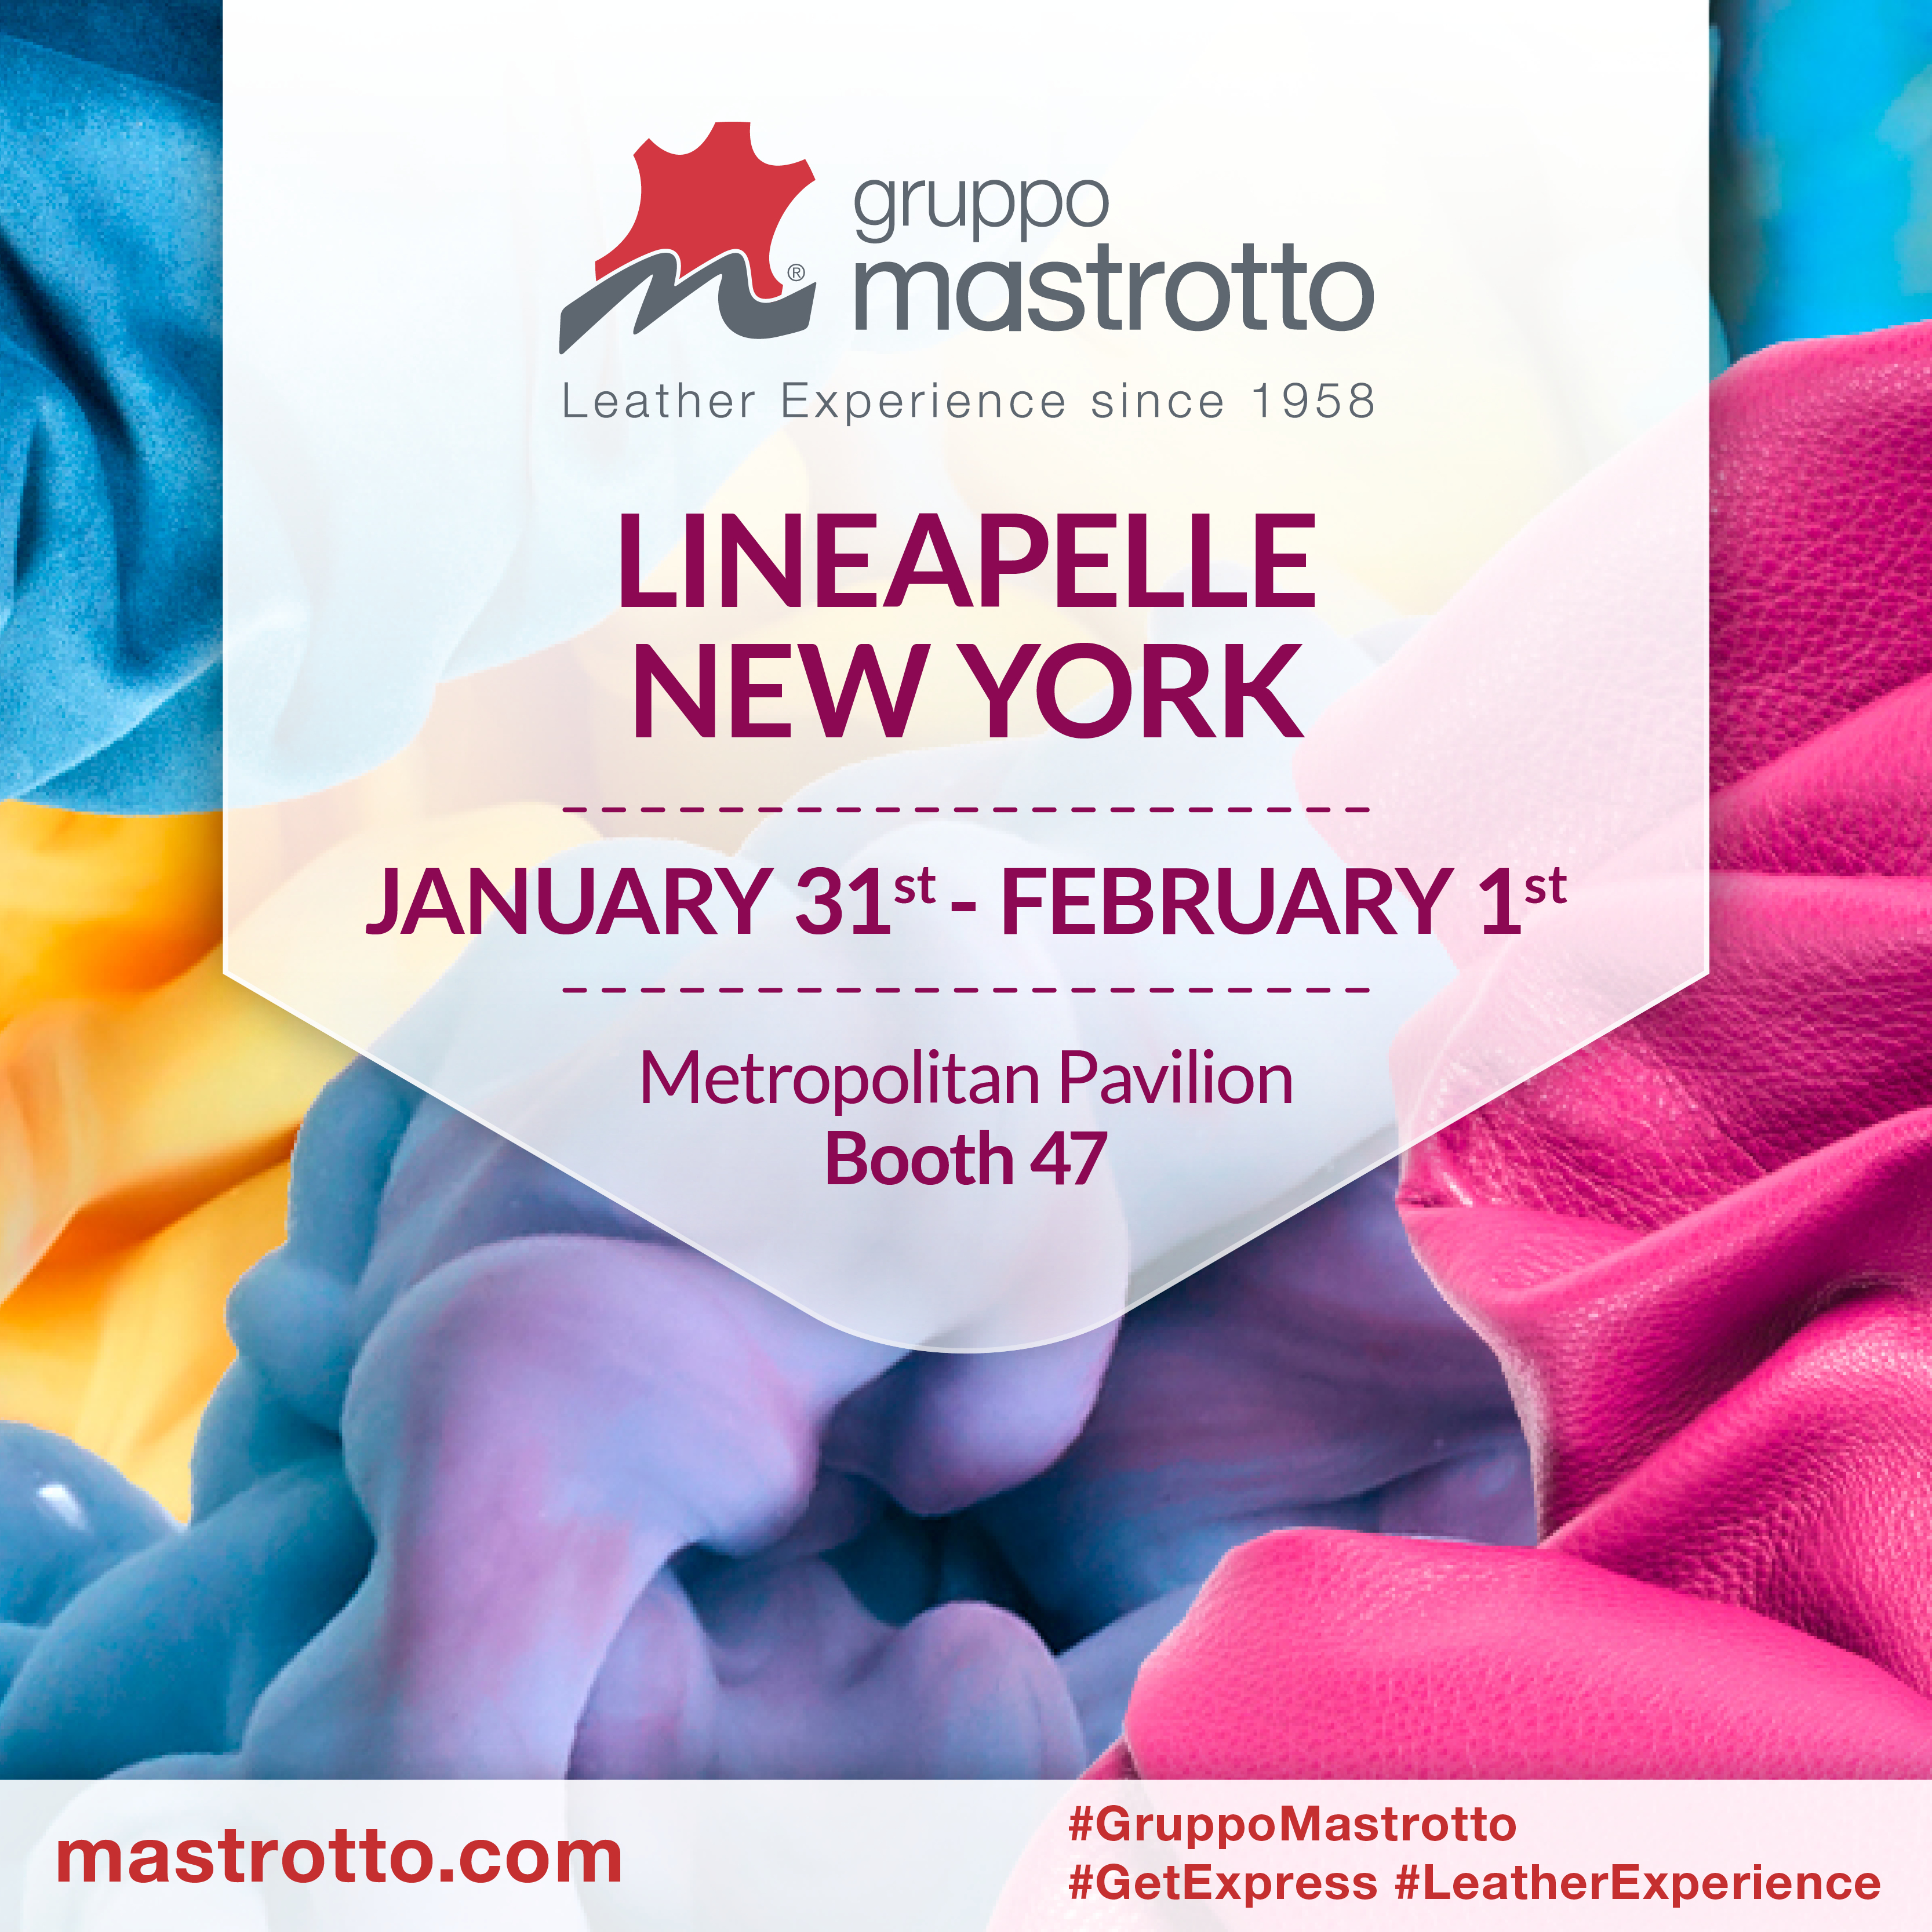 Gruppo Mastrotto Lineapelle NY 2018